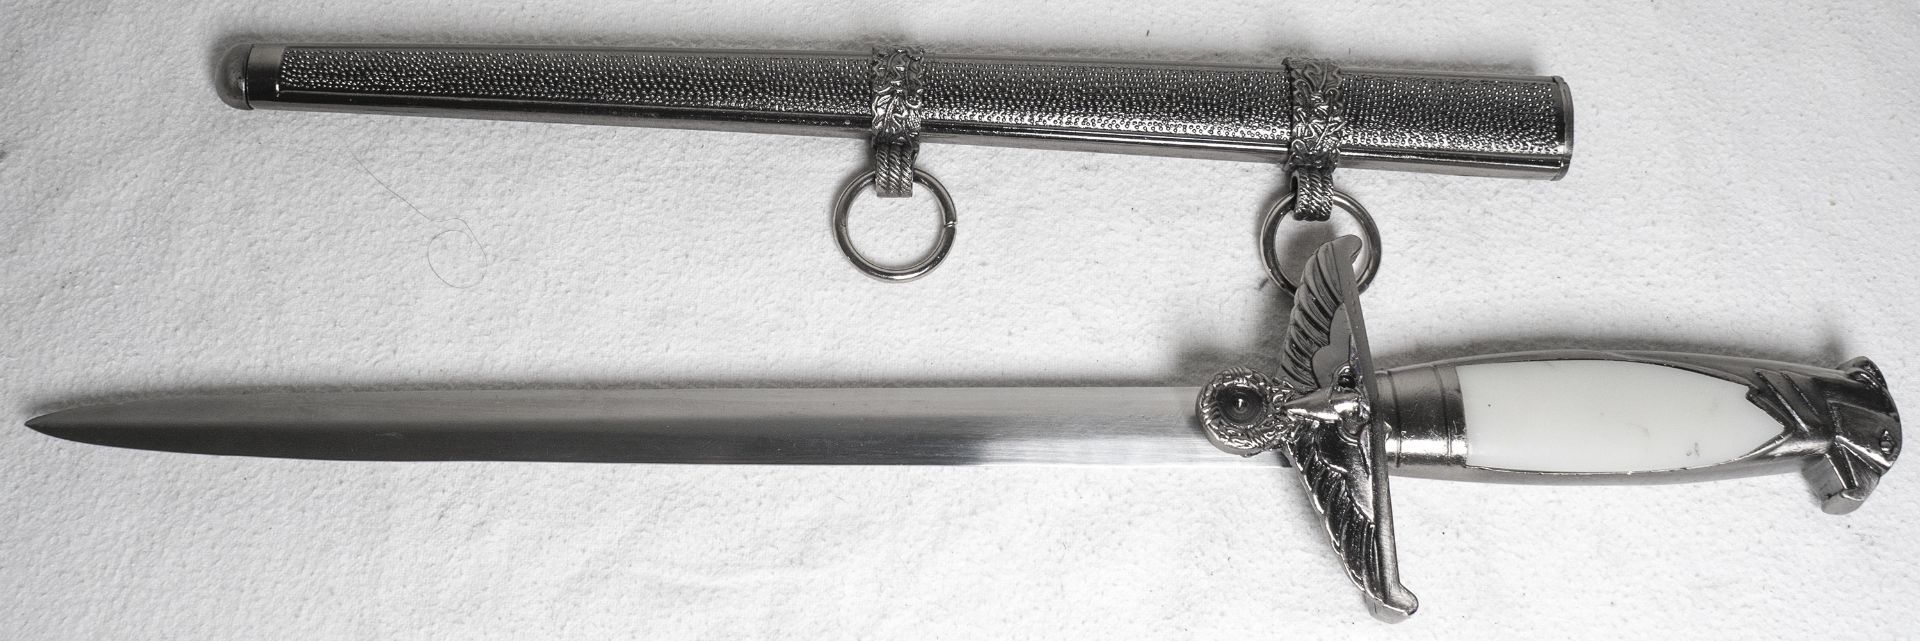 Parade - Dolch mit NS - Symbolik, Metall - Scheide, Länge: ca. 38 cm, Klinge: ca. 24,5 cm.